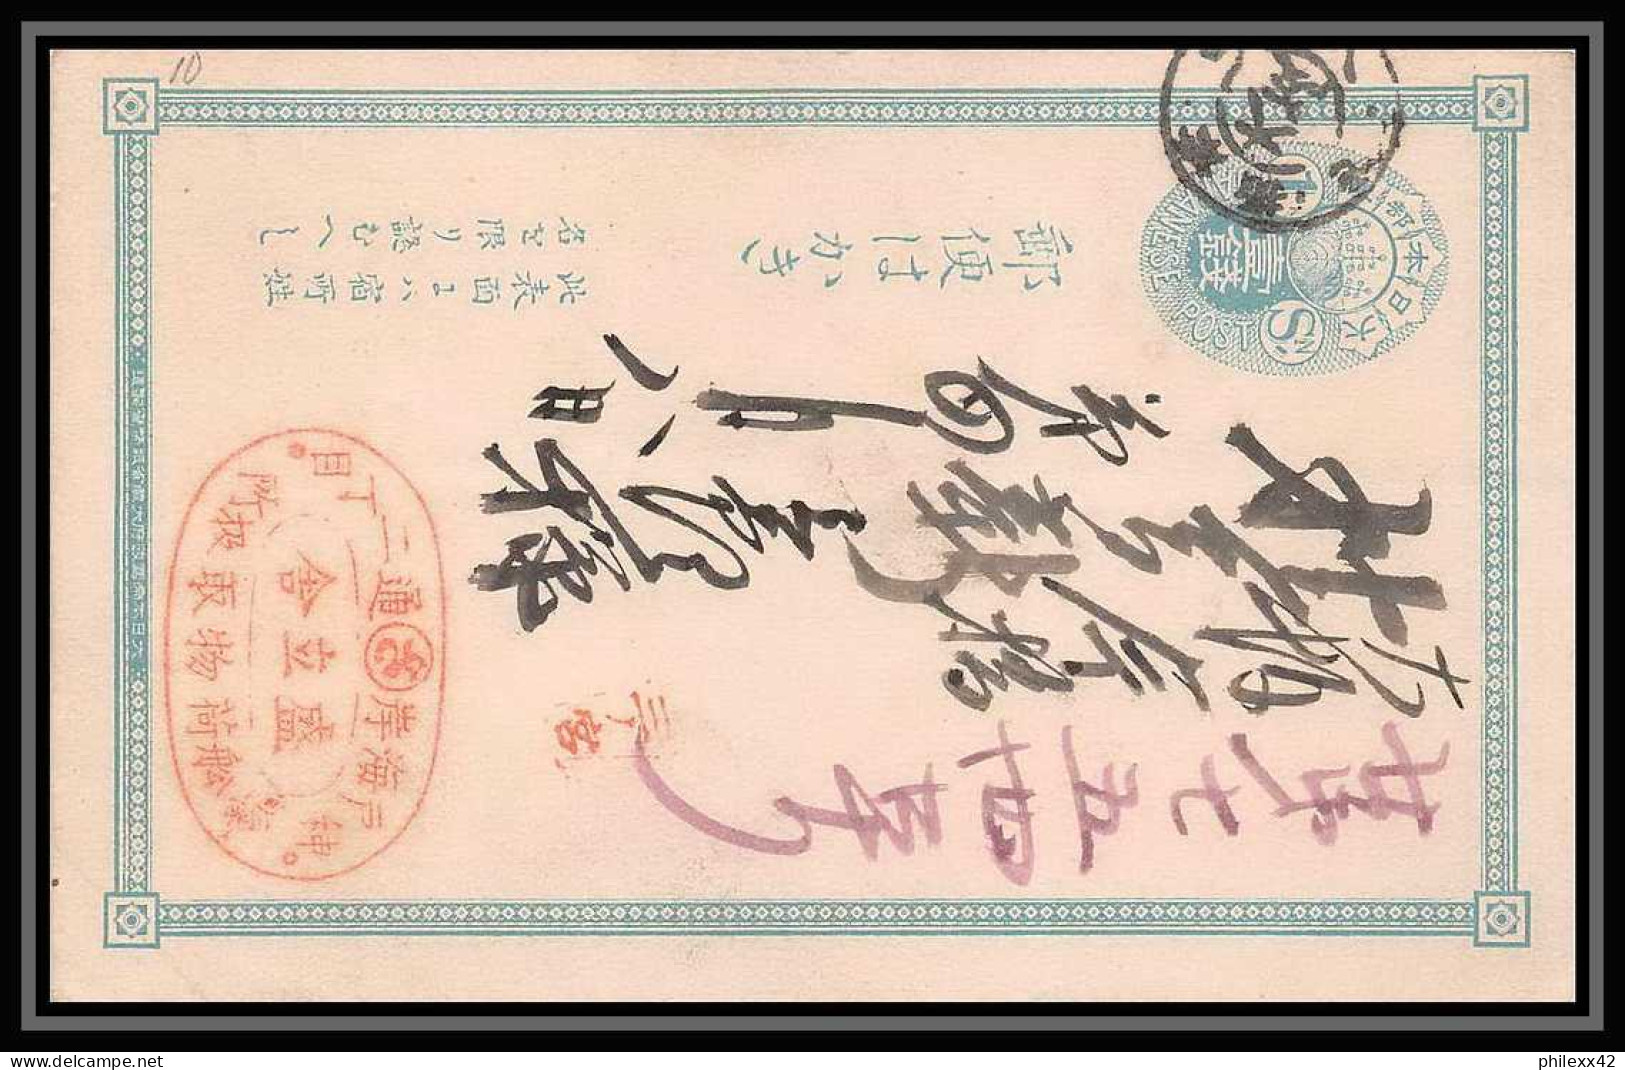 2054/ Japon (Japan) lot de 12 Entiers Stationery Carte postale (postcard) 1 sen red type 1885 1 